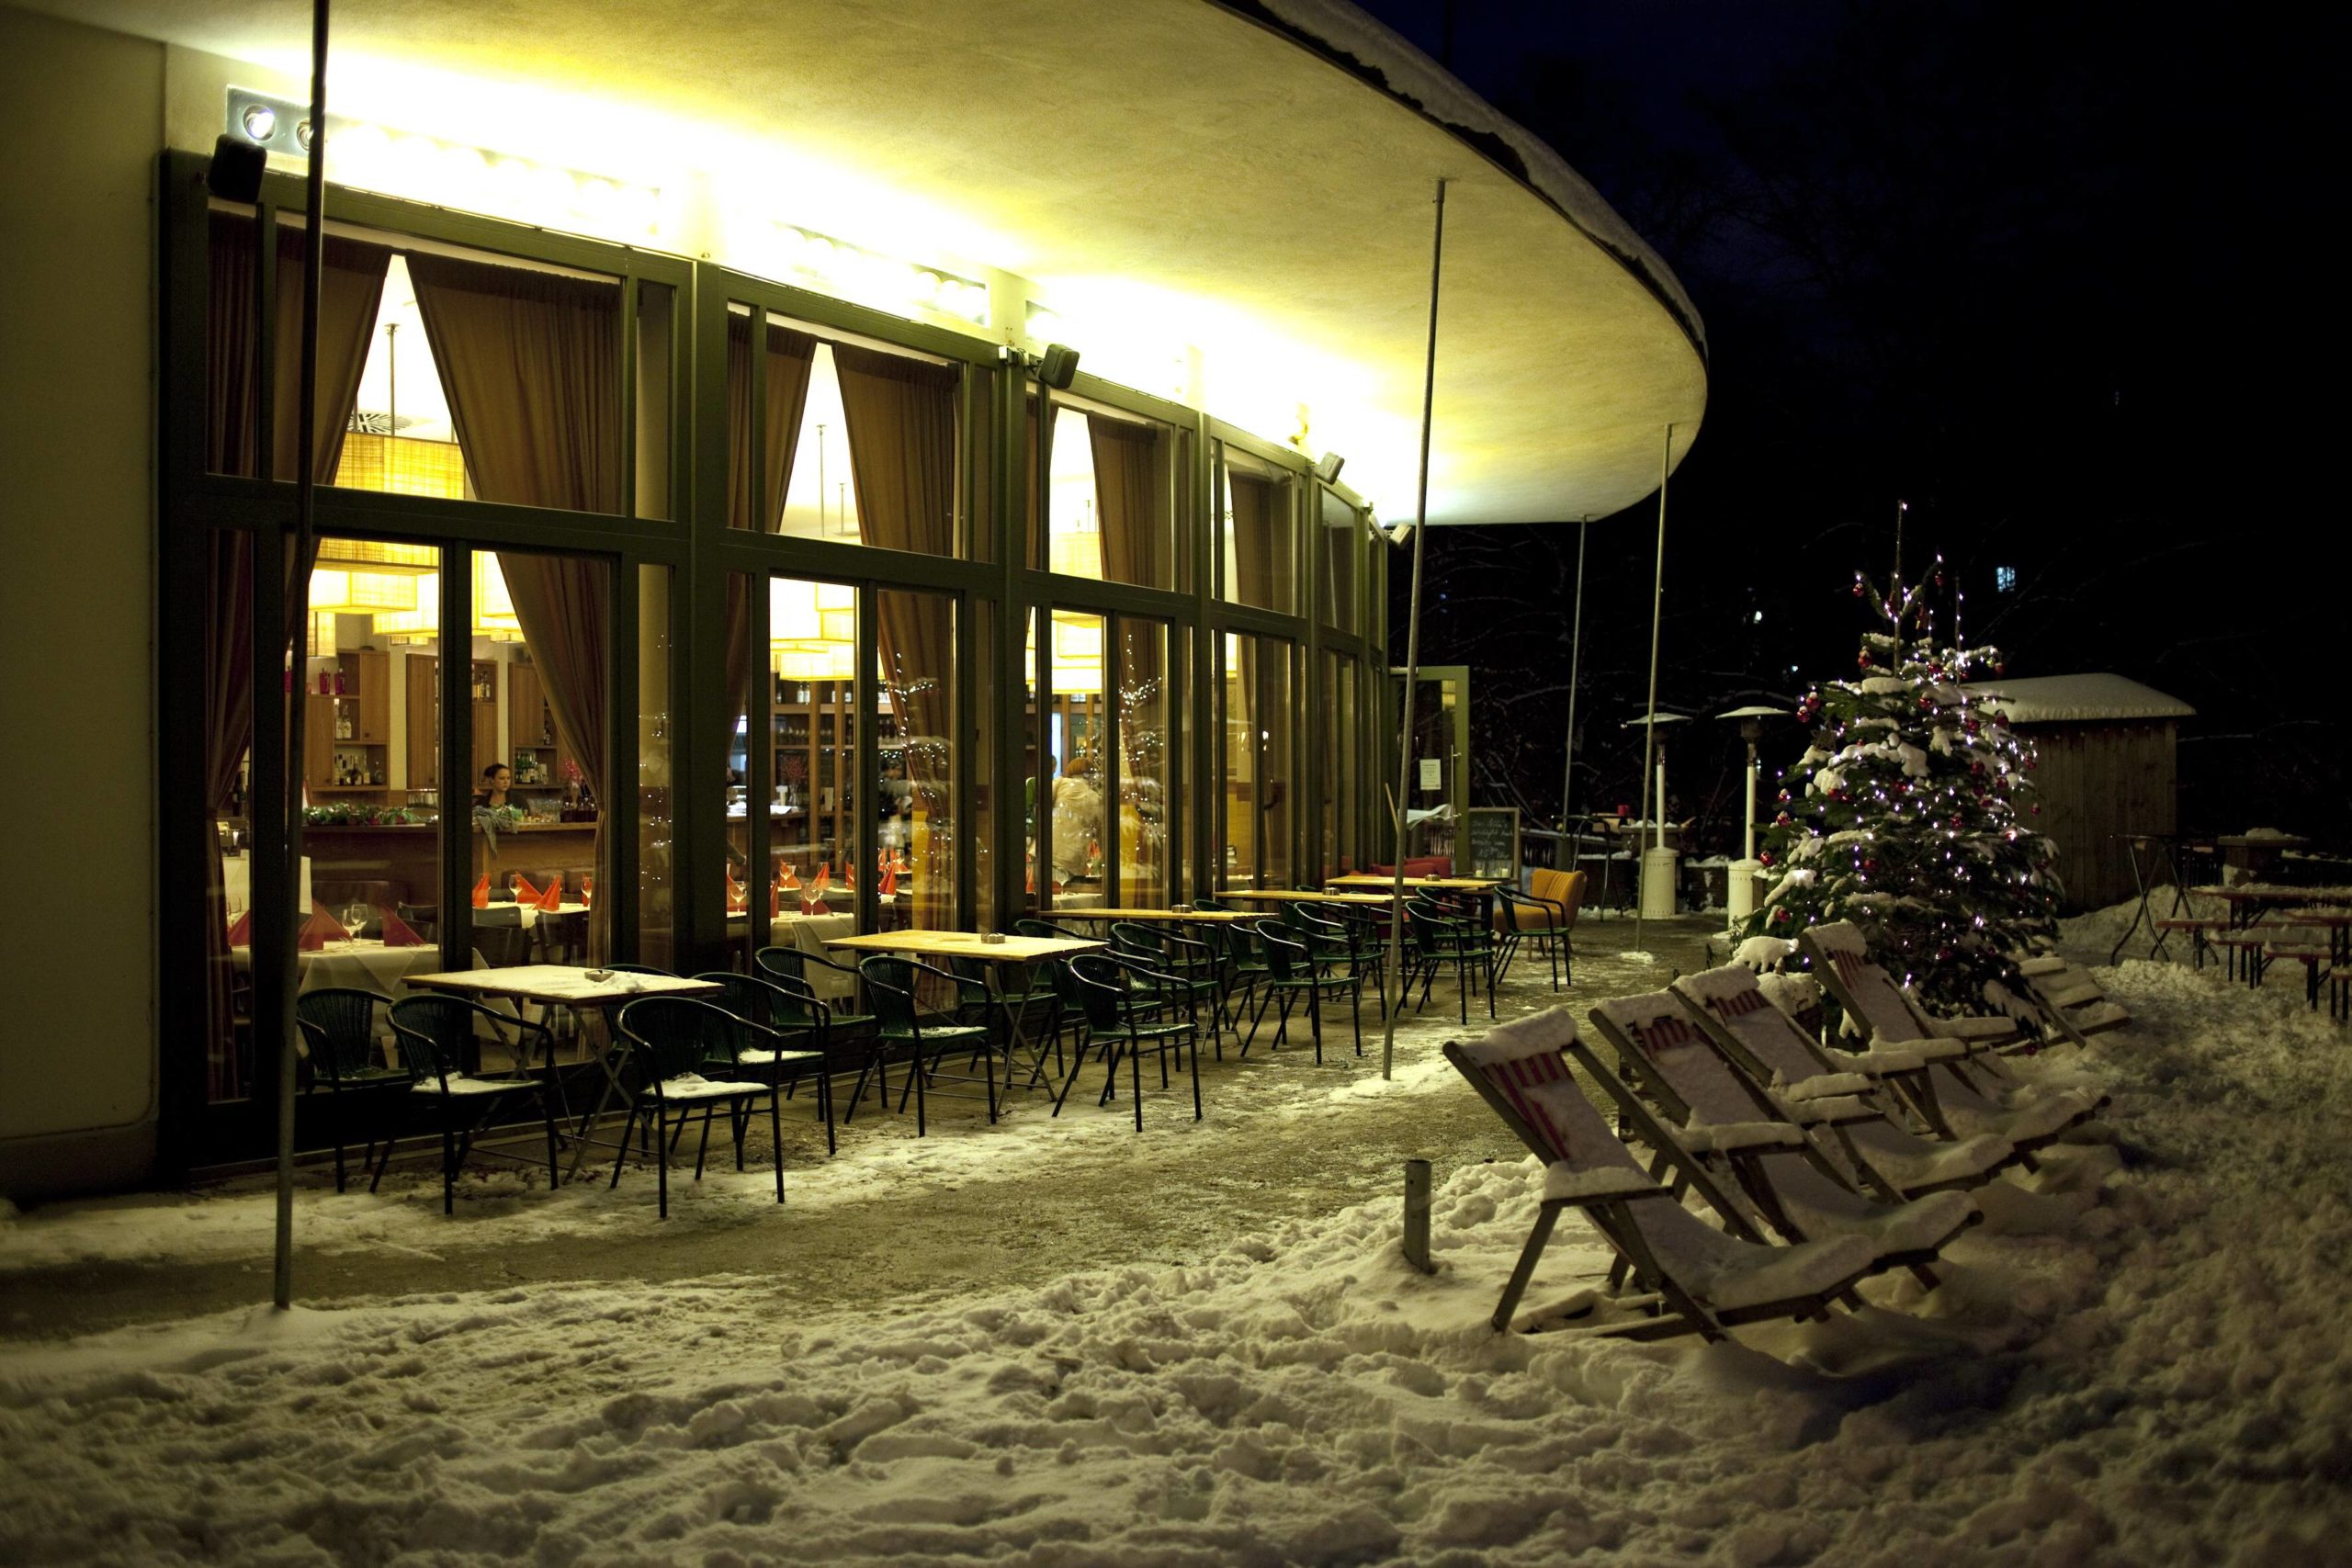 Schweiz in Berlin Gemütliches Restaurant mit großer Terrasse und Schweizer Küche: Das Nola's am Weinberg war zu jeder Jahreszeit eine stimmungsvolle Adresse.